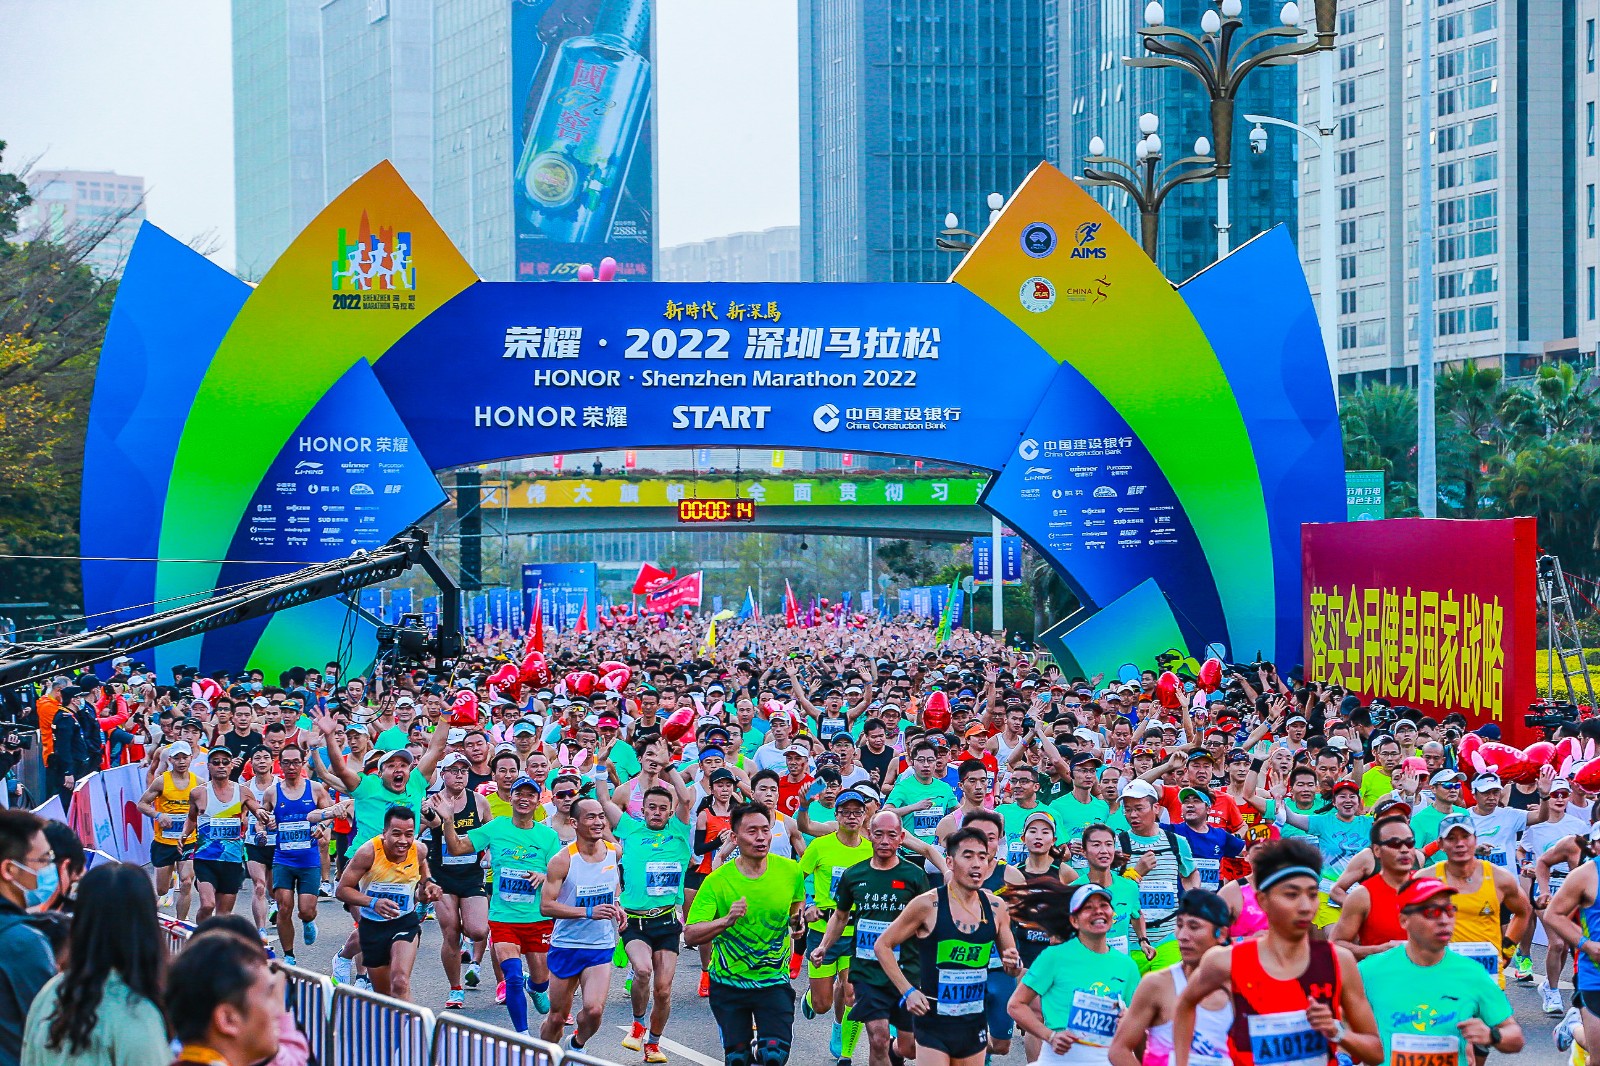 深圳体产集团成功举办荣耀·2022深圳马拉松 为城市增光添彩、为民生健康幸福助力